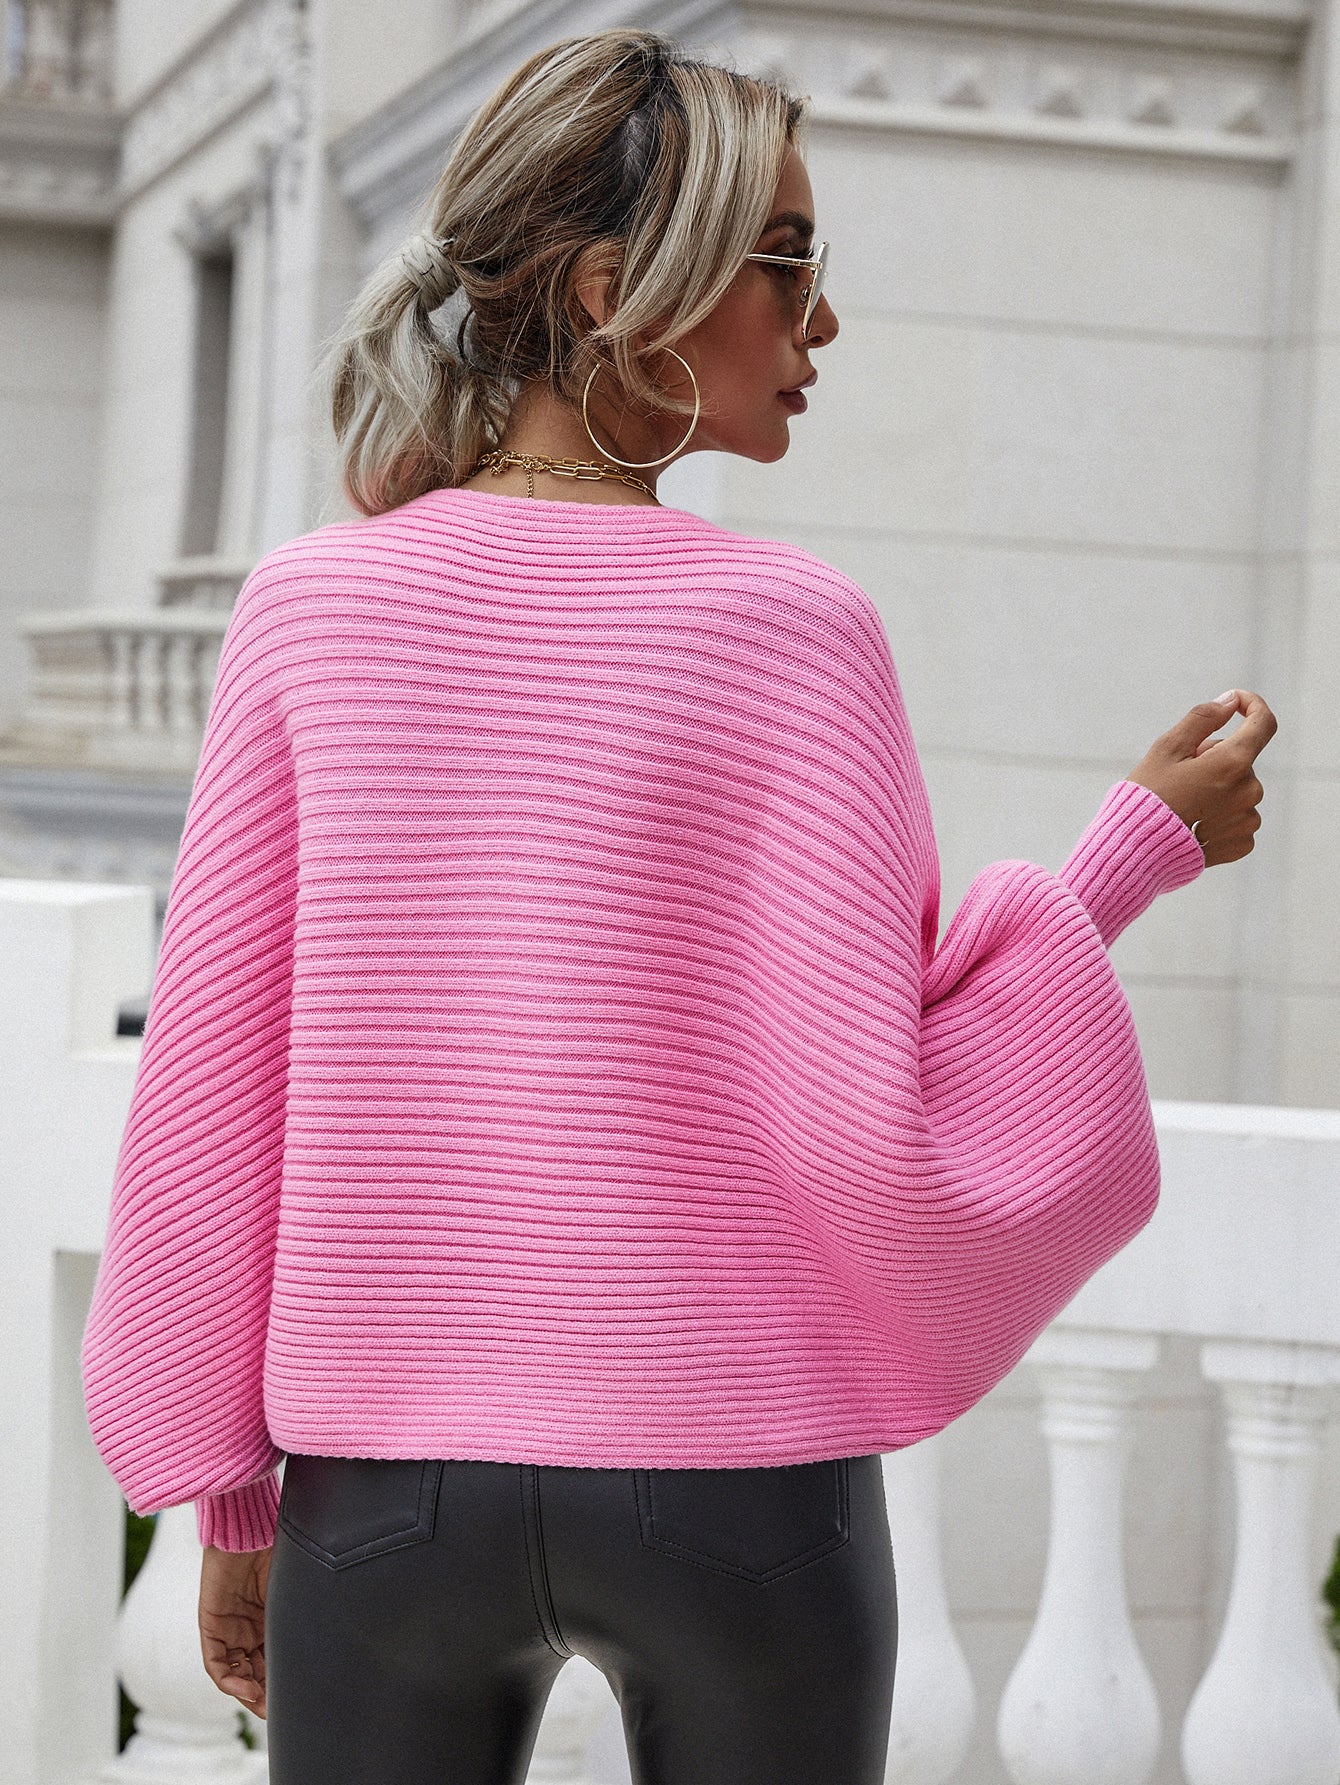 Sloan Sweater